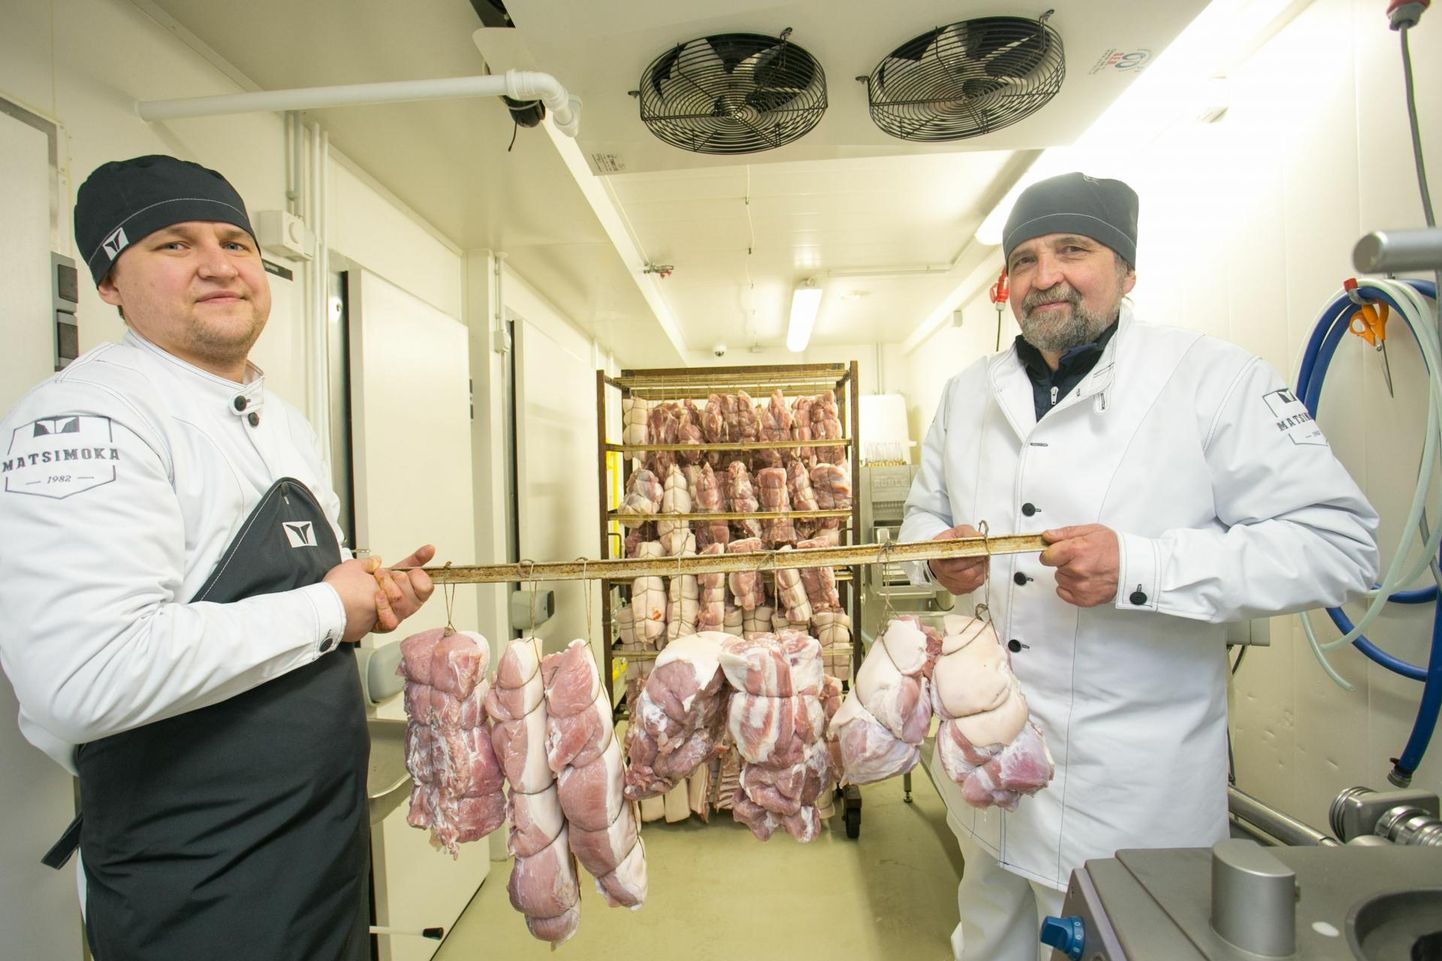 Руководители производства мясной продукции Matsimoka Ян Инно и Айвар Инно хотят сами производить электроэнергию.